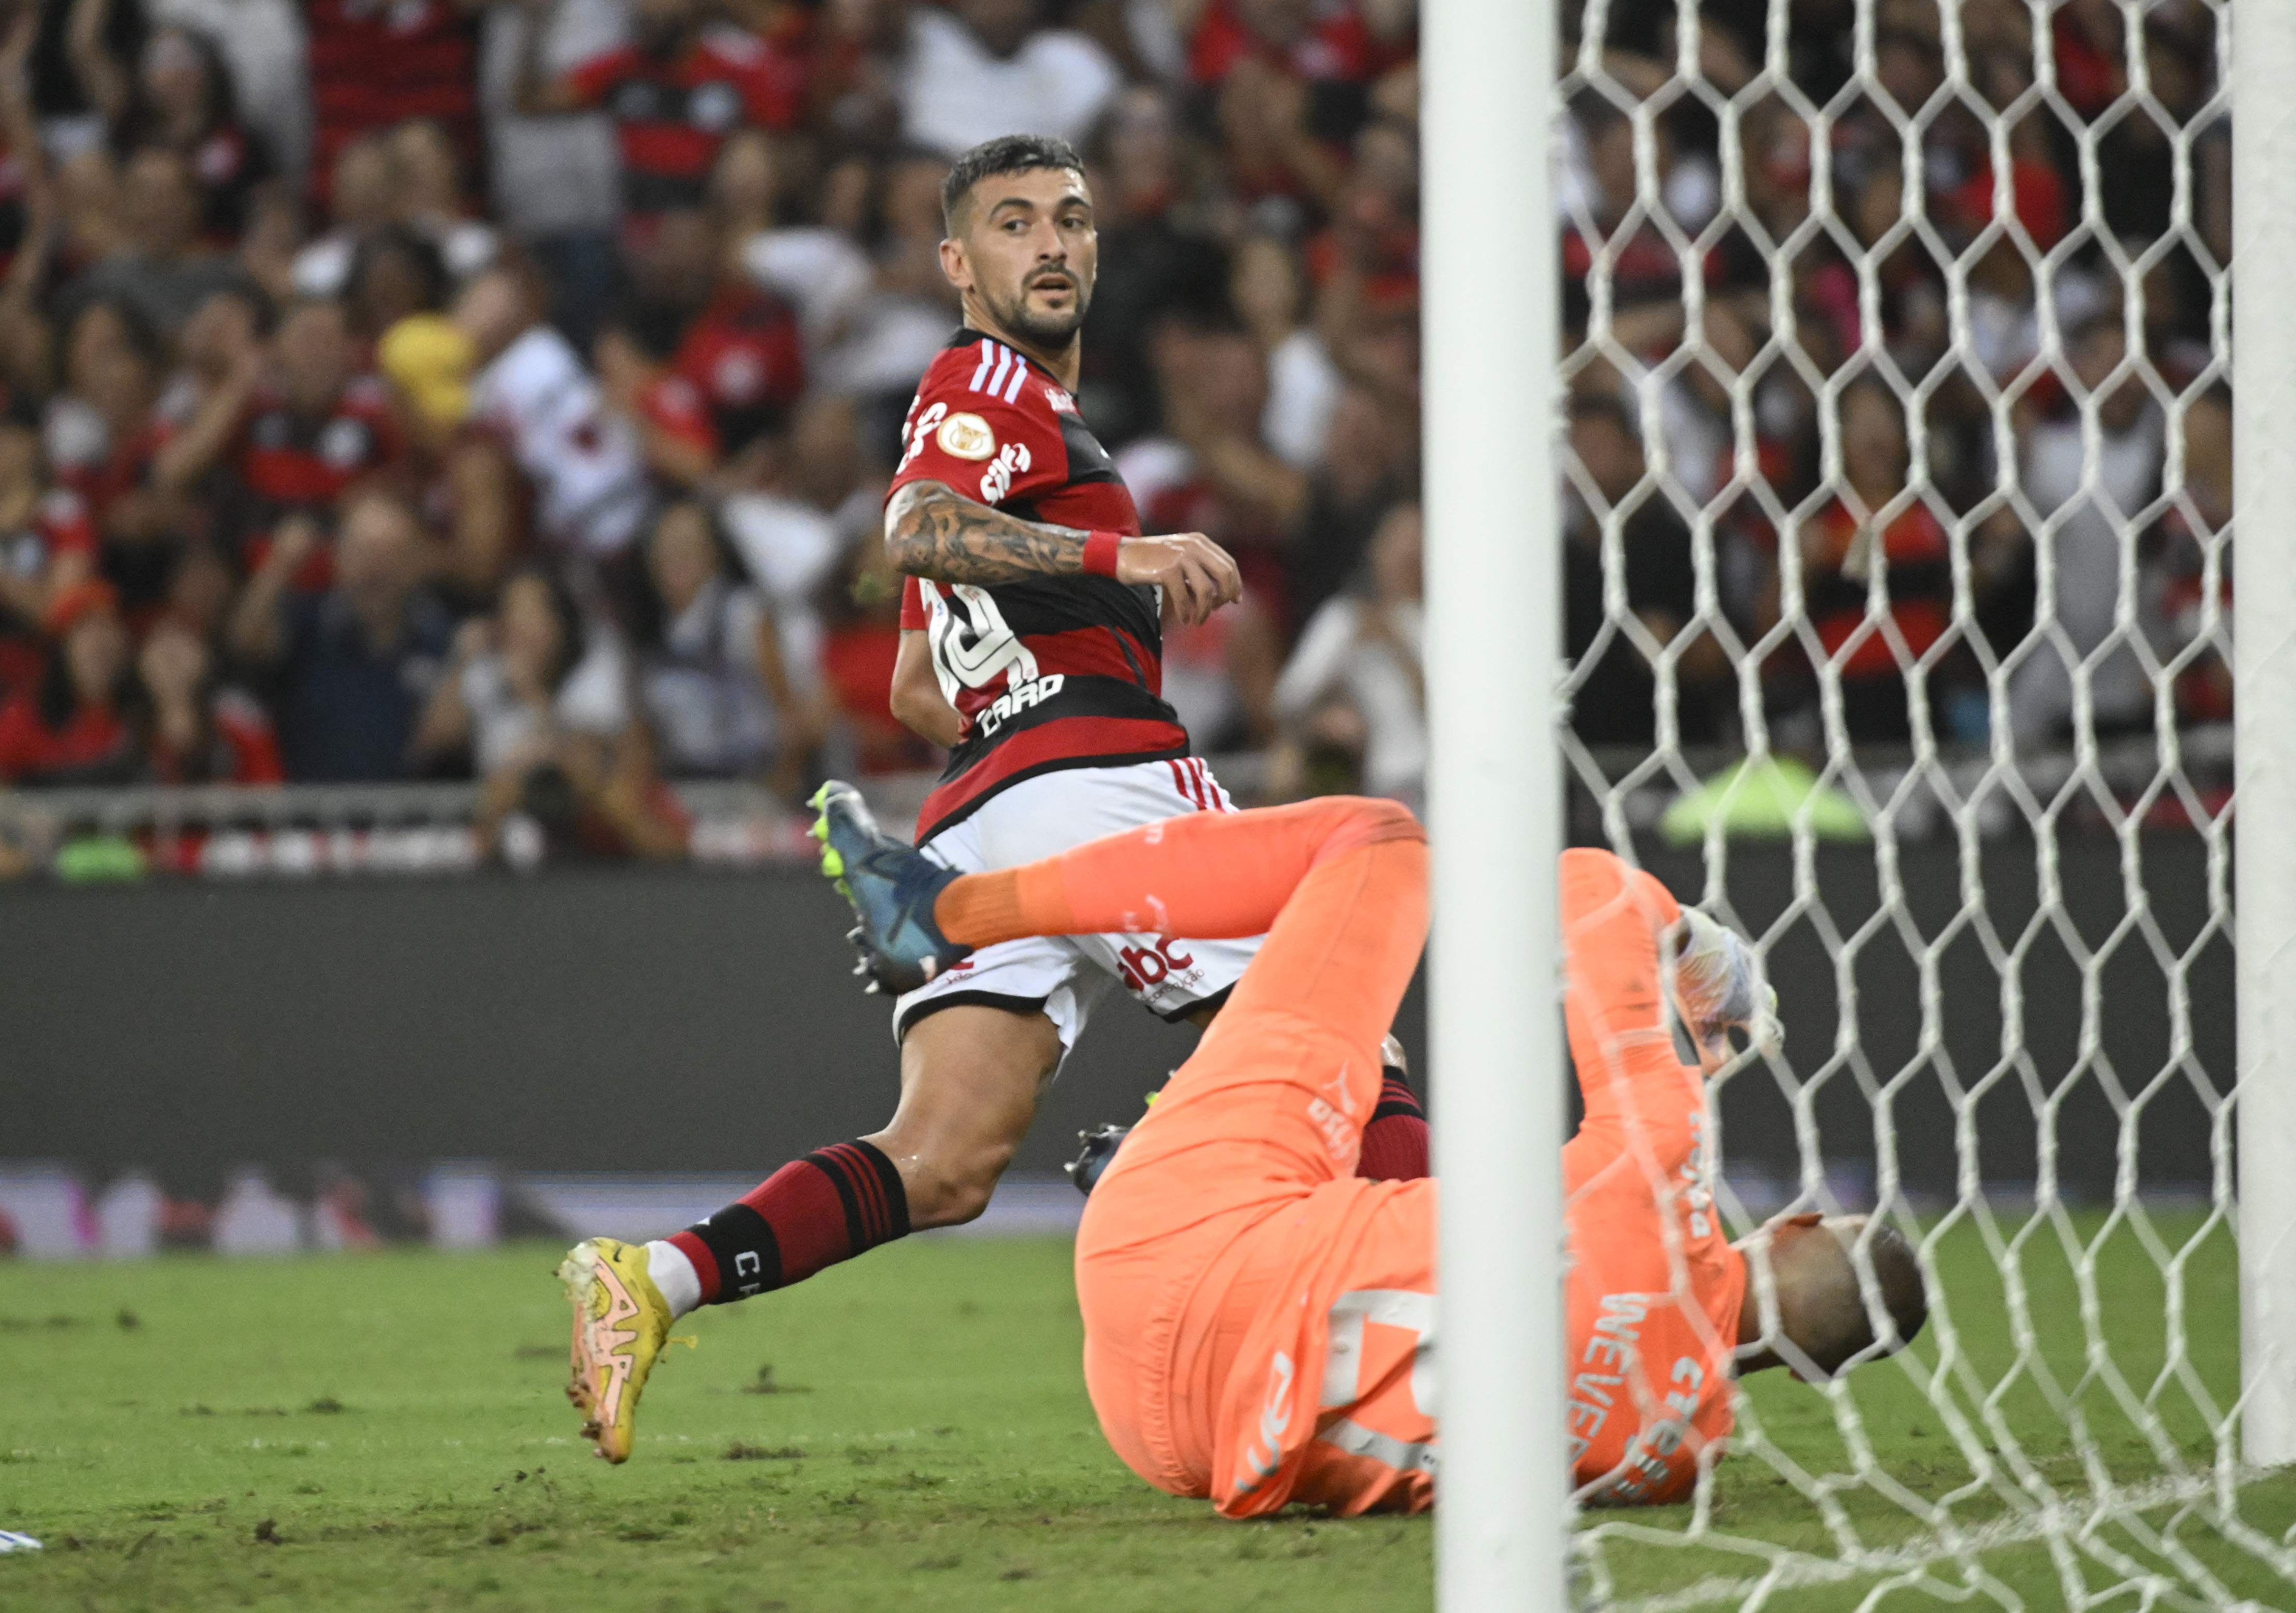 Flamengo fará jogo contra o Orlando City, nos EUA